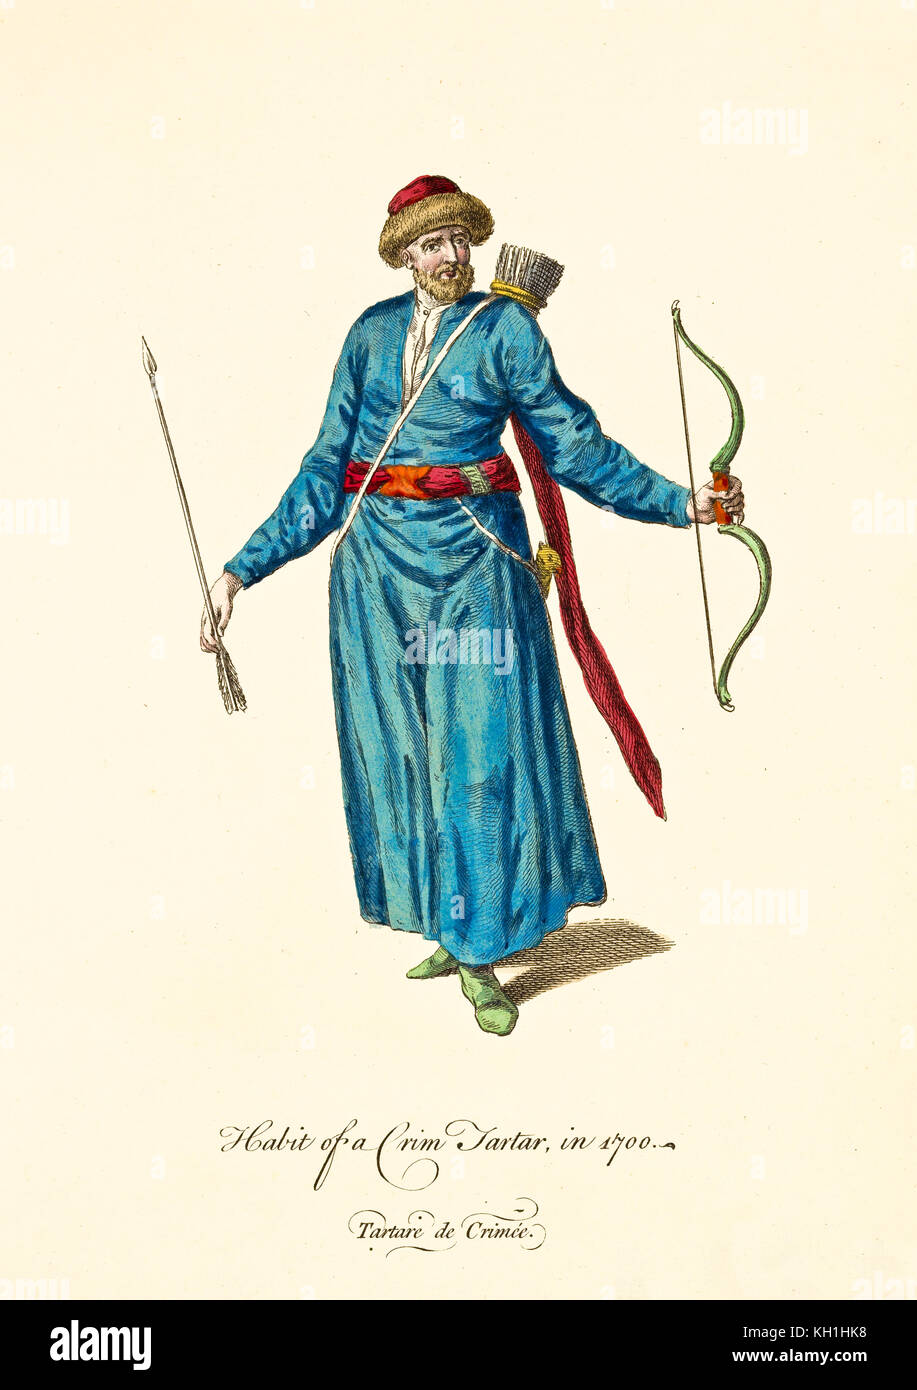 Tatar Crimea in abiti tradizionali nel 1700. Tunica blu, cintura in tessuto rosso, arco e frecce, cappello in pelliccia rossa. Vecchia illustrazione di J.M. Vien, 1757-1772 Foto Stock